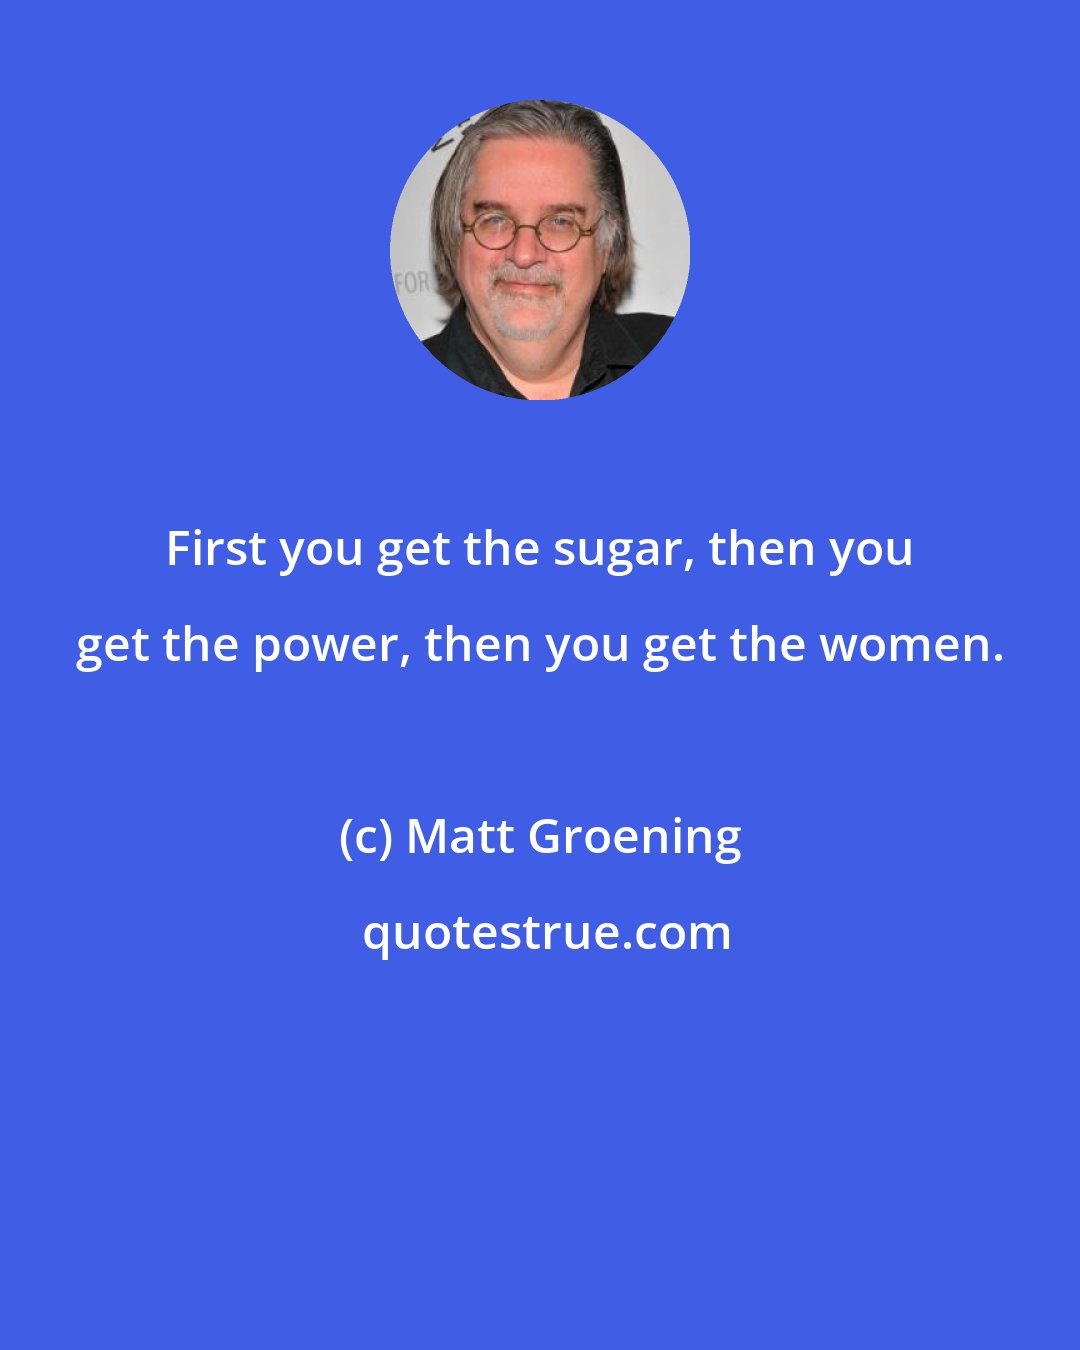 Matt Groening: First you get the sugar, then you get the power, then you get the women.